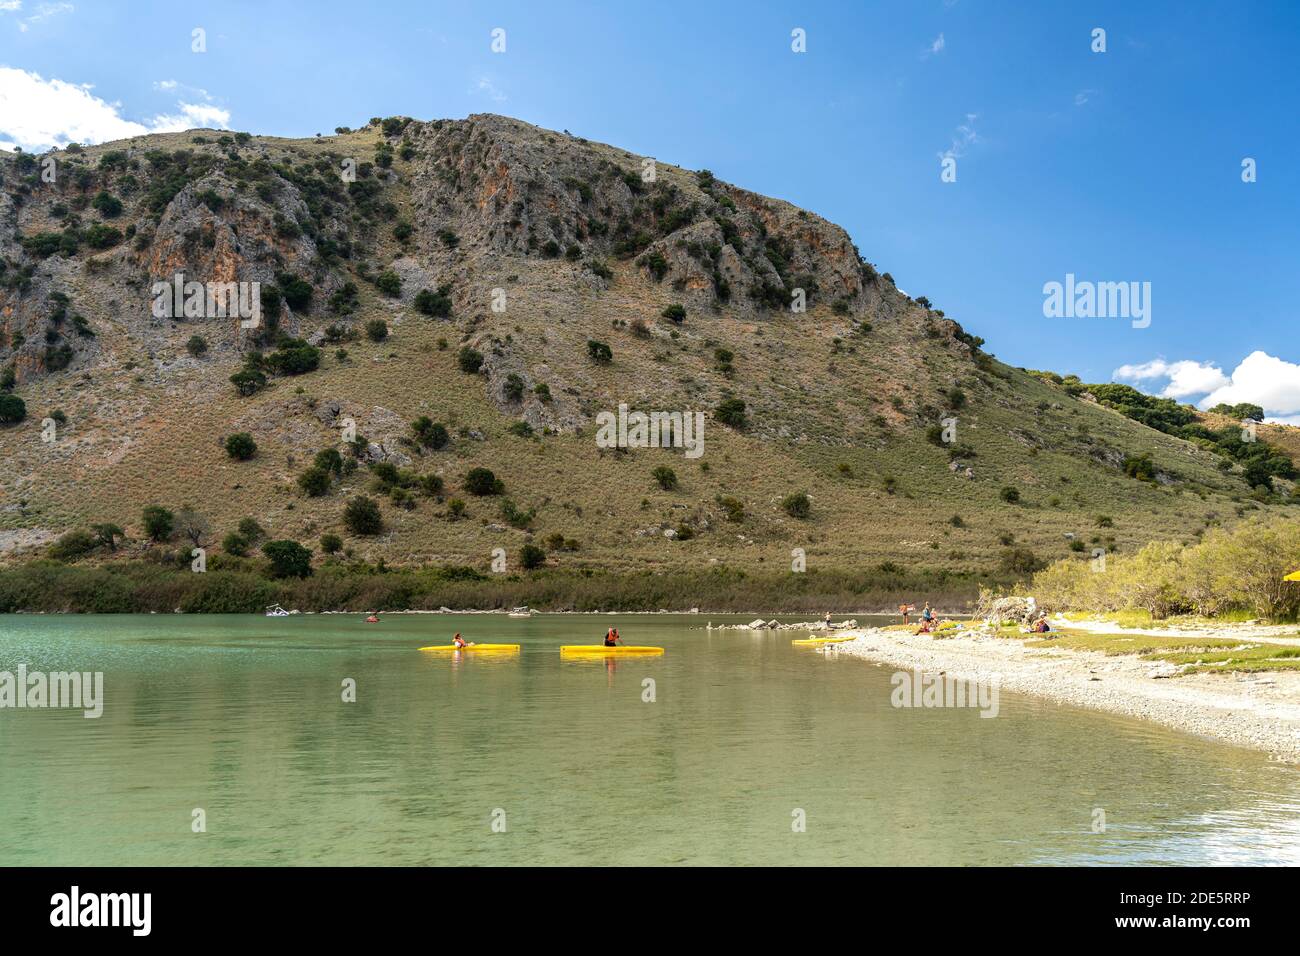 Der Kournas-See BEI Georgioupoli, Kreta, Griechenland, Europa | Lac de Kournas près de Georgioupoli, Crète, Grèce, Europe Banque D'Images